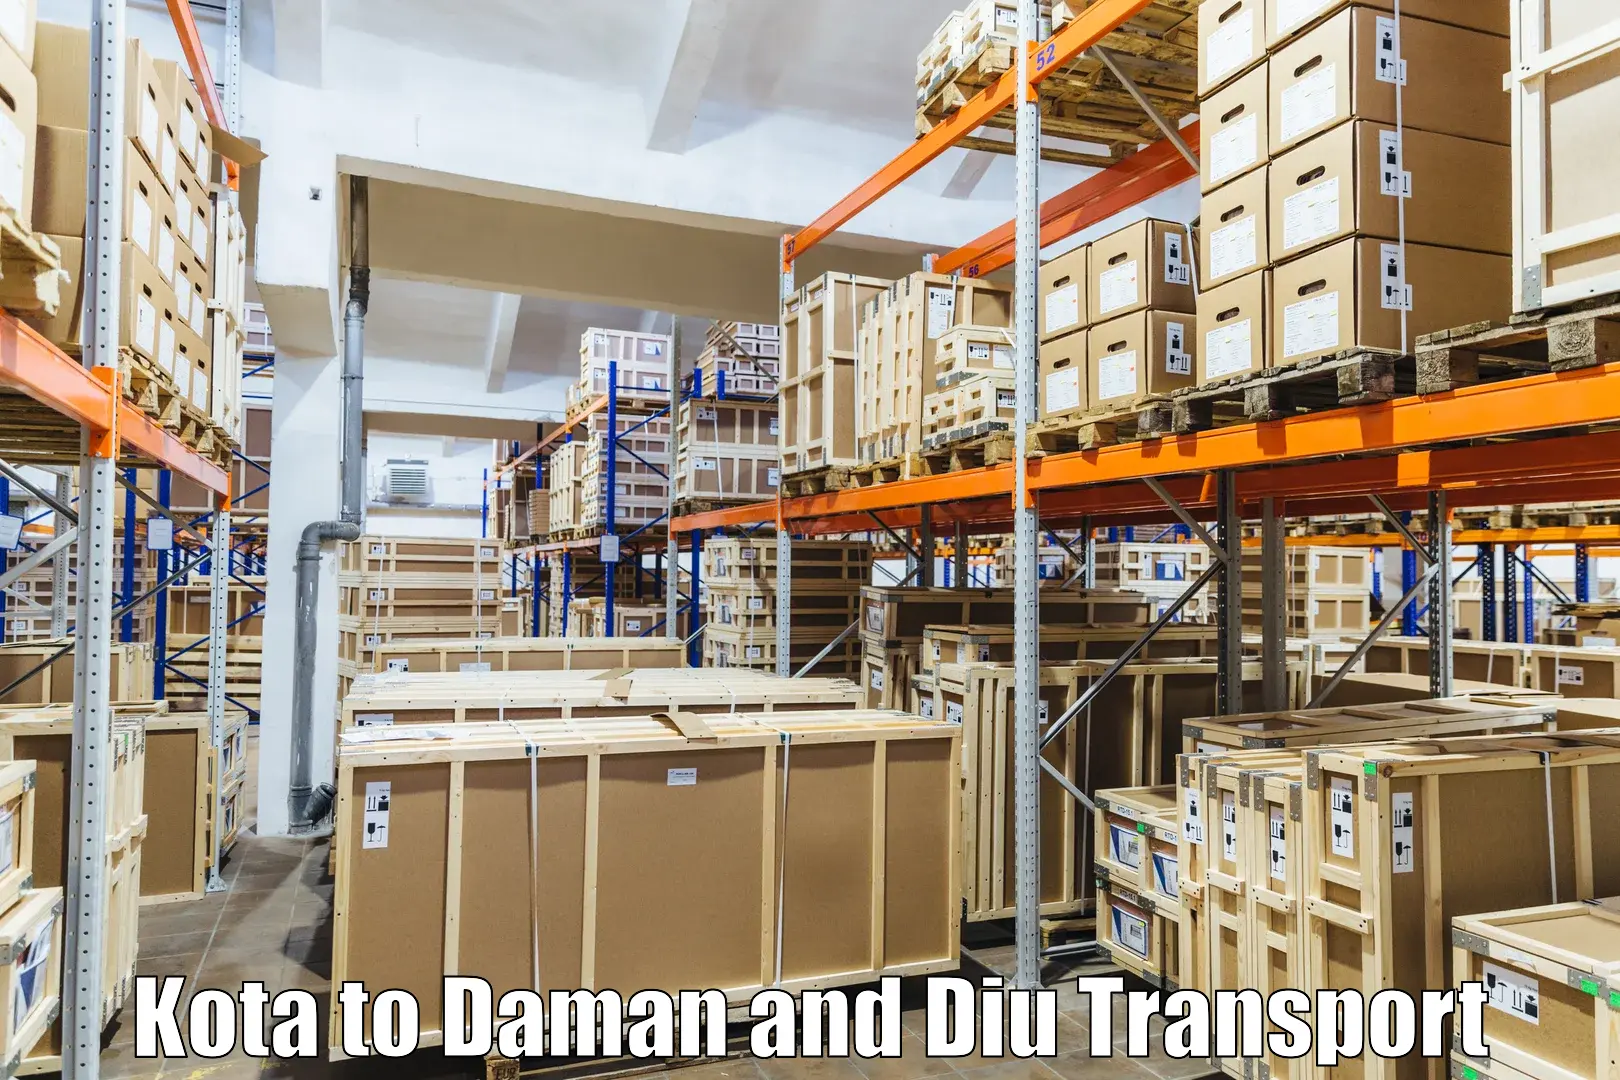 Air freight transport services Kota to Daman and Diu